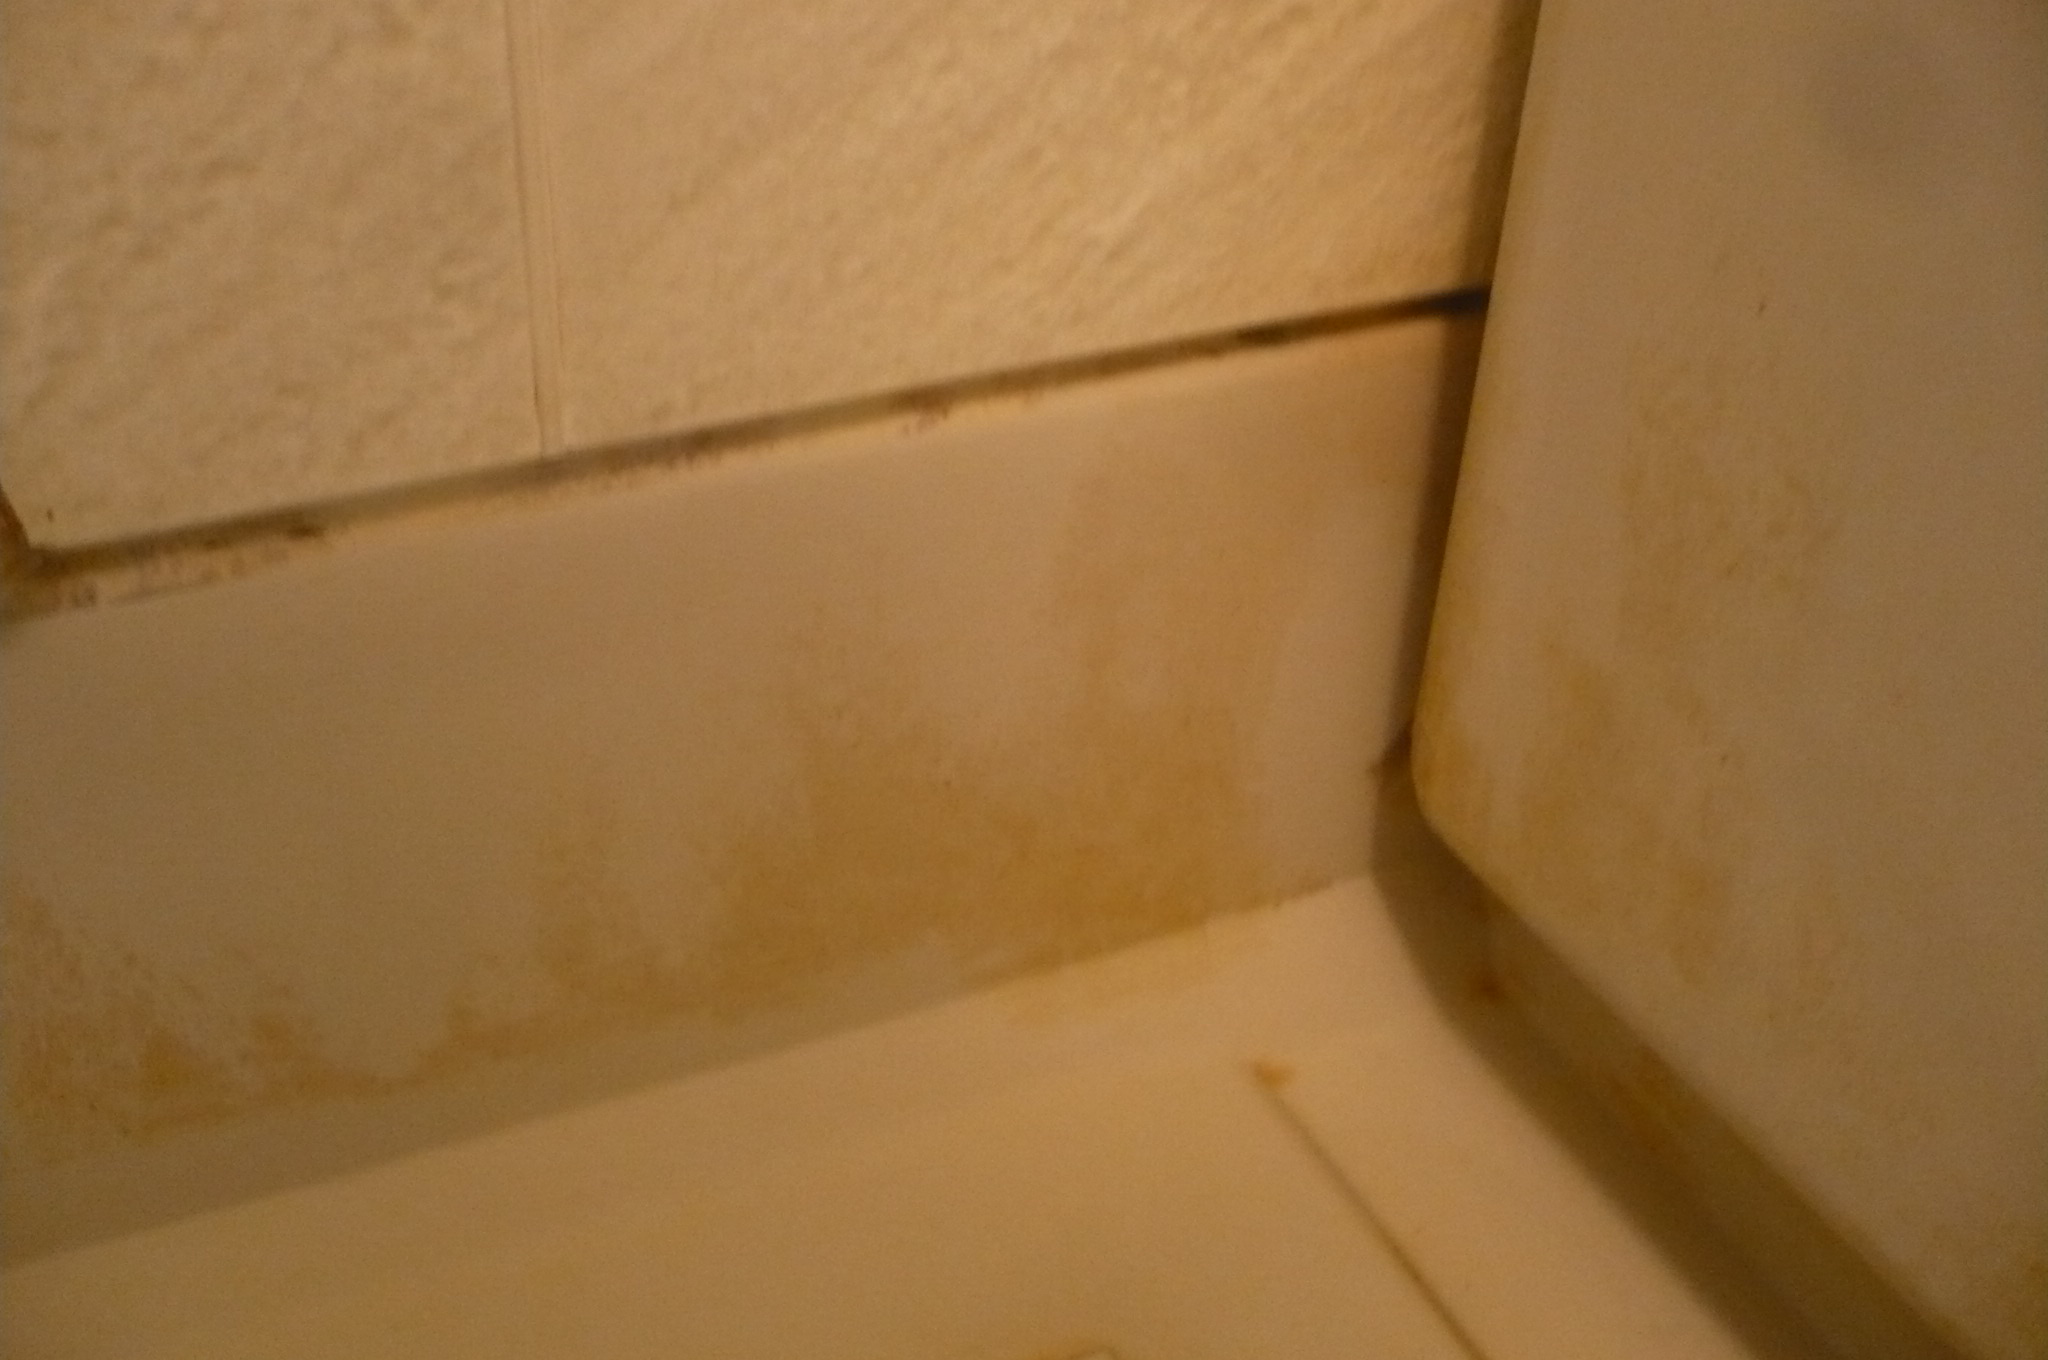 風呂の汚れの落とし方を紹介 床に近い壁の皮脂汚れを落とす実験を公開